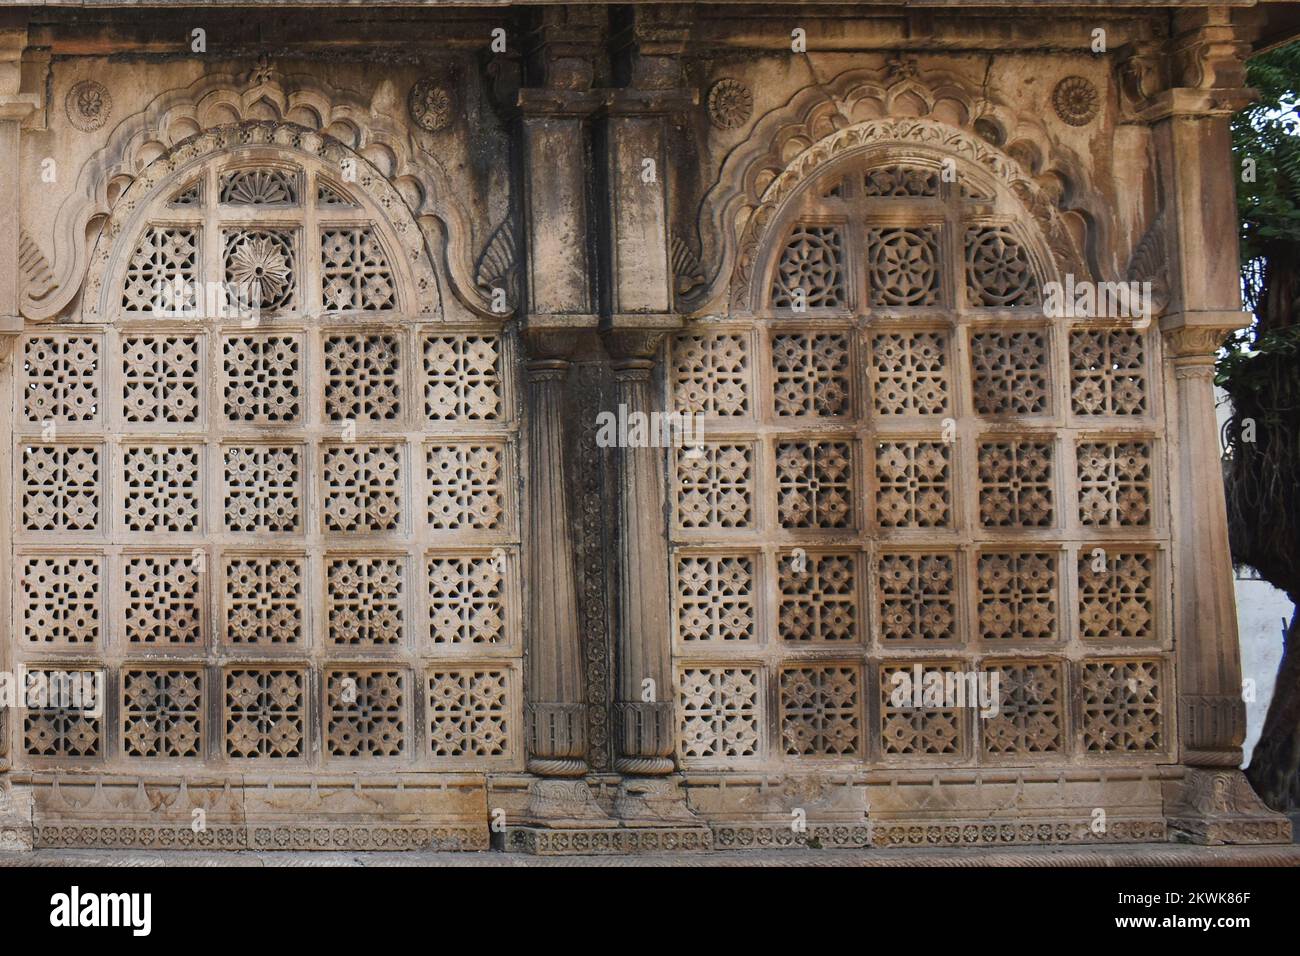 Vue rapprochée du côté de Maqbara près de la tombe du Sultan Ahmed, mur extérieur d'architecture avec des sculptures complexes en pierre, Ahmedabad, Gujarat, Inde Banque D'Images